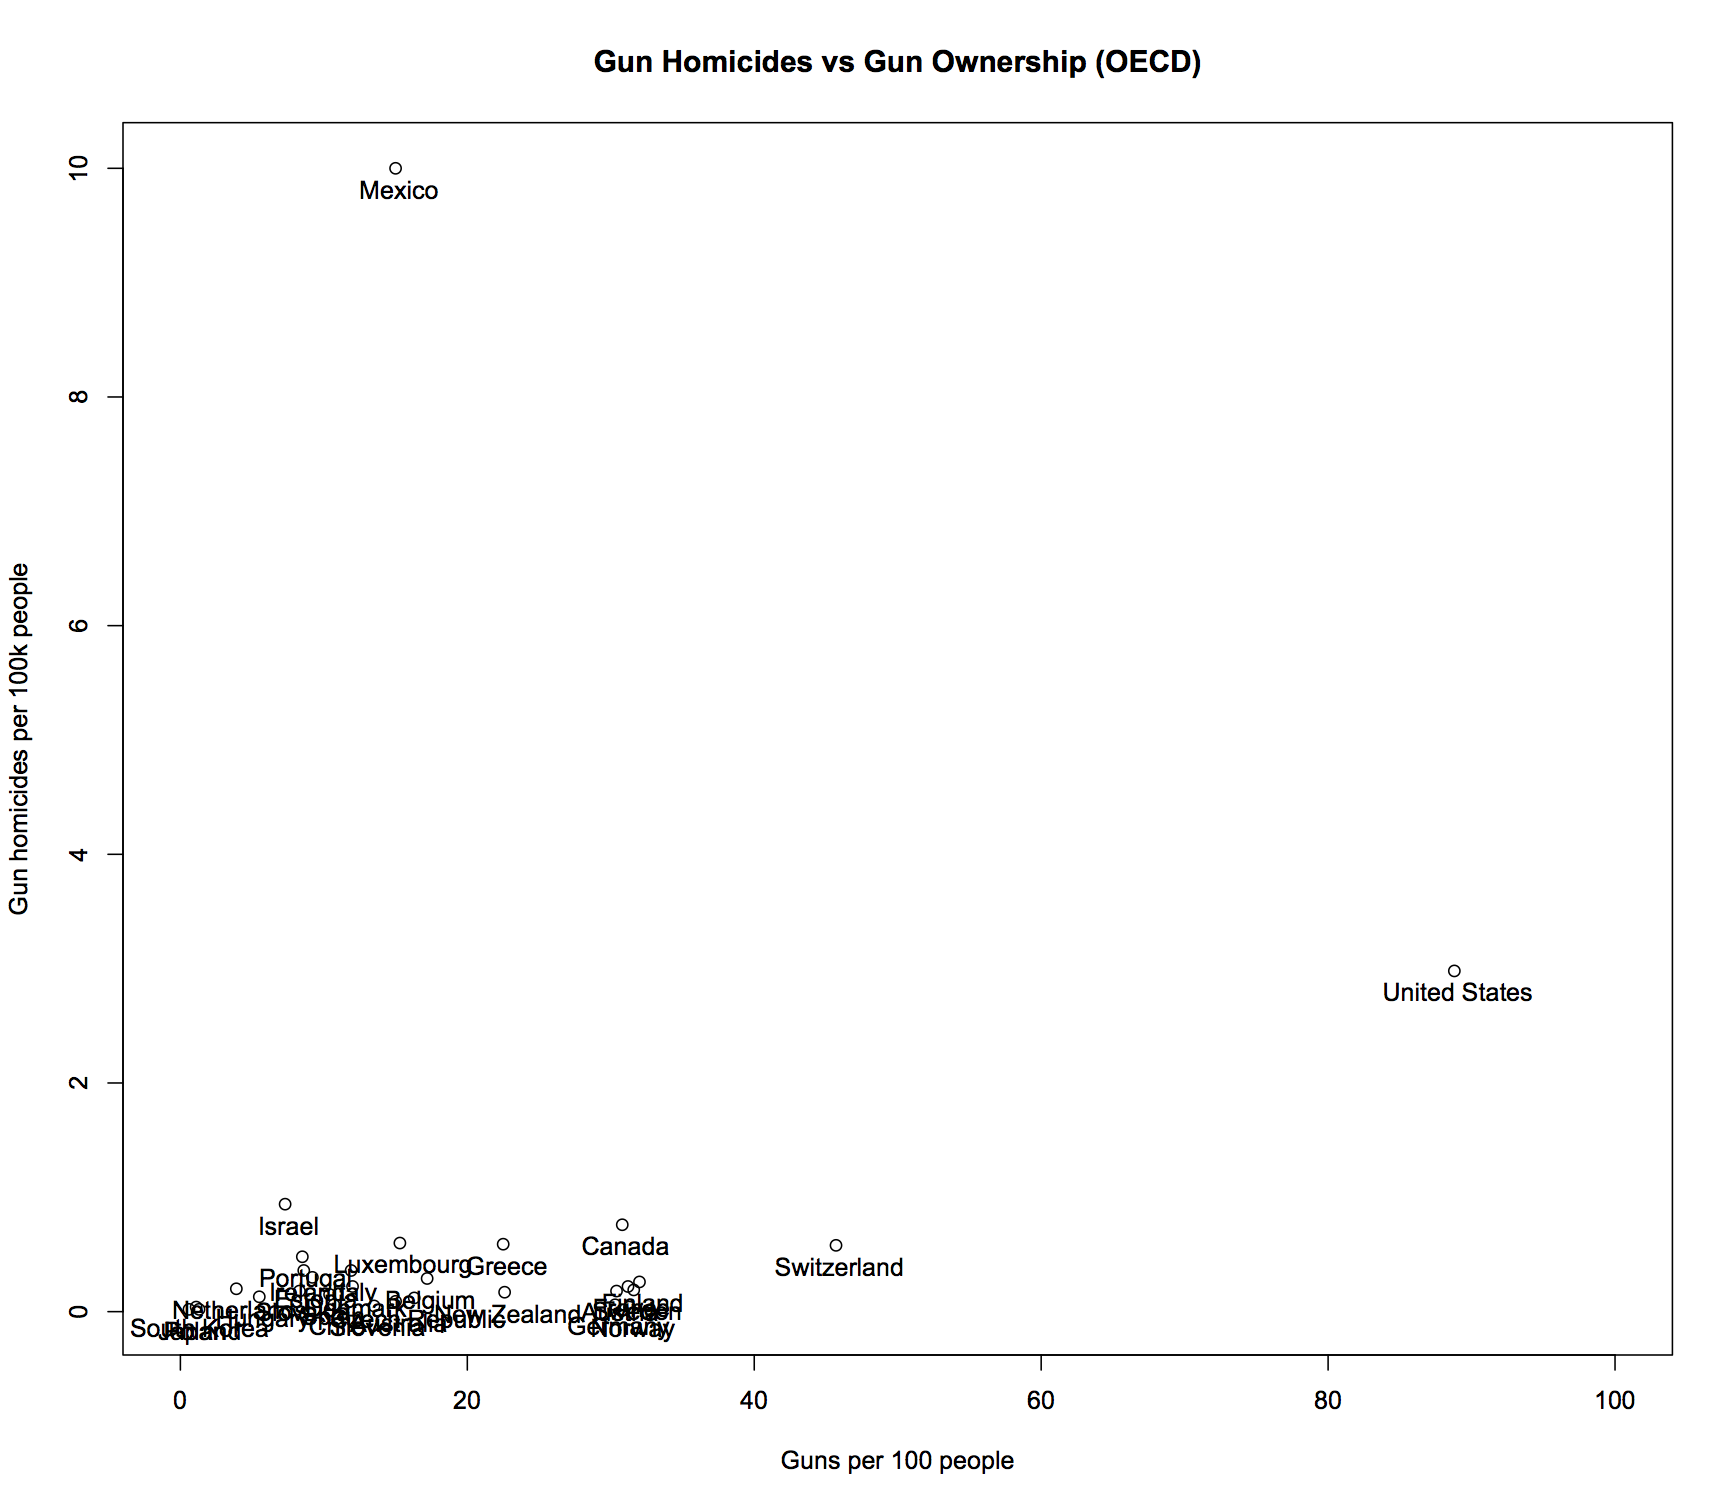 Figure 2: Gun homicides per capita vs. gun ownership per capita in OECD countries.